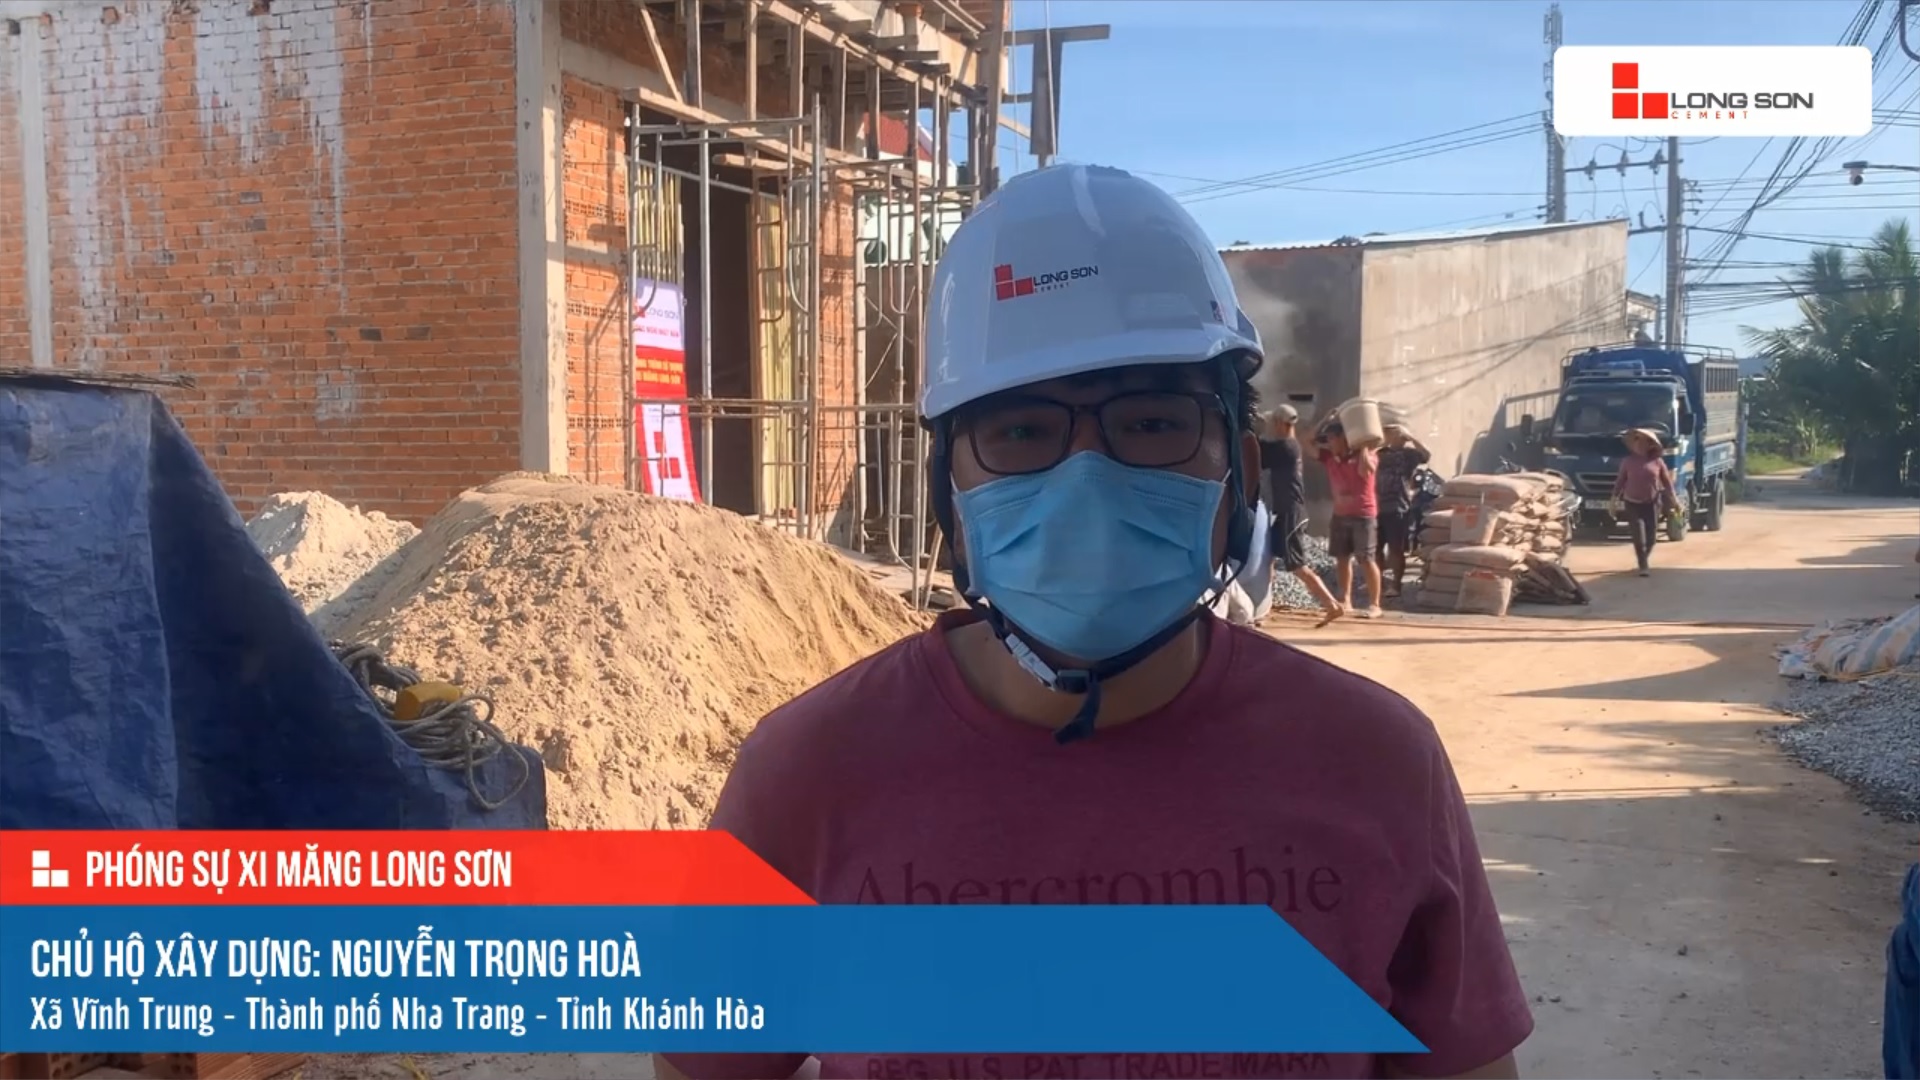 Phóng sự công trình sử dụng xi măng Long Sơn tại Khánh Hòa ngày 11/12/2021